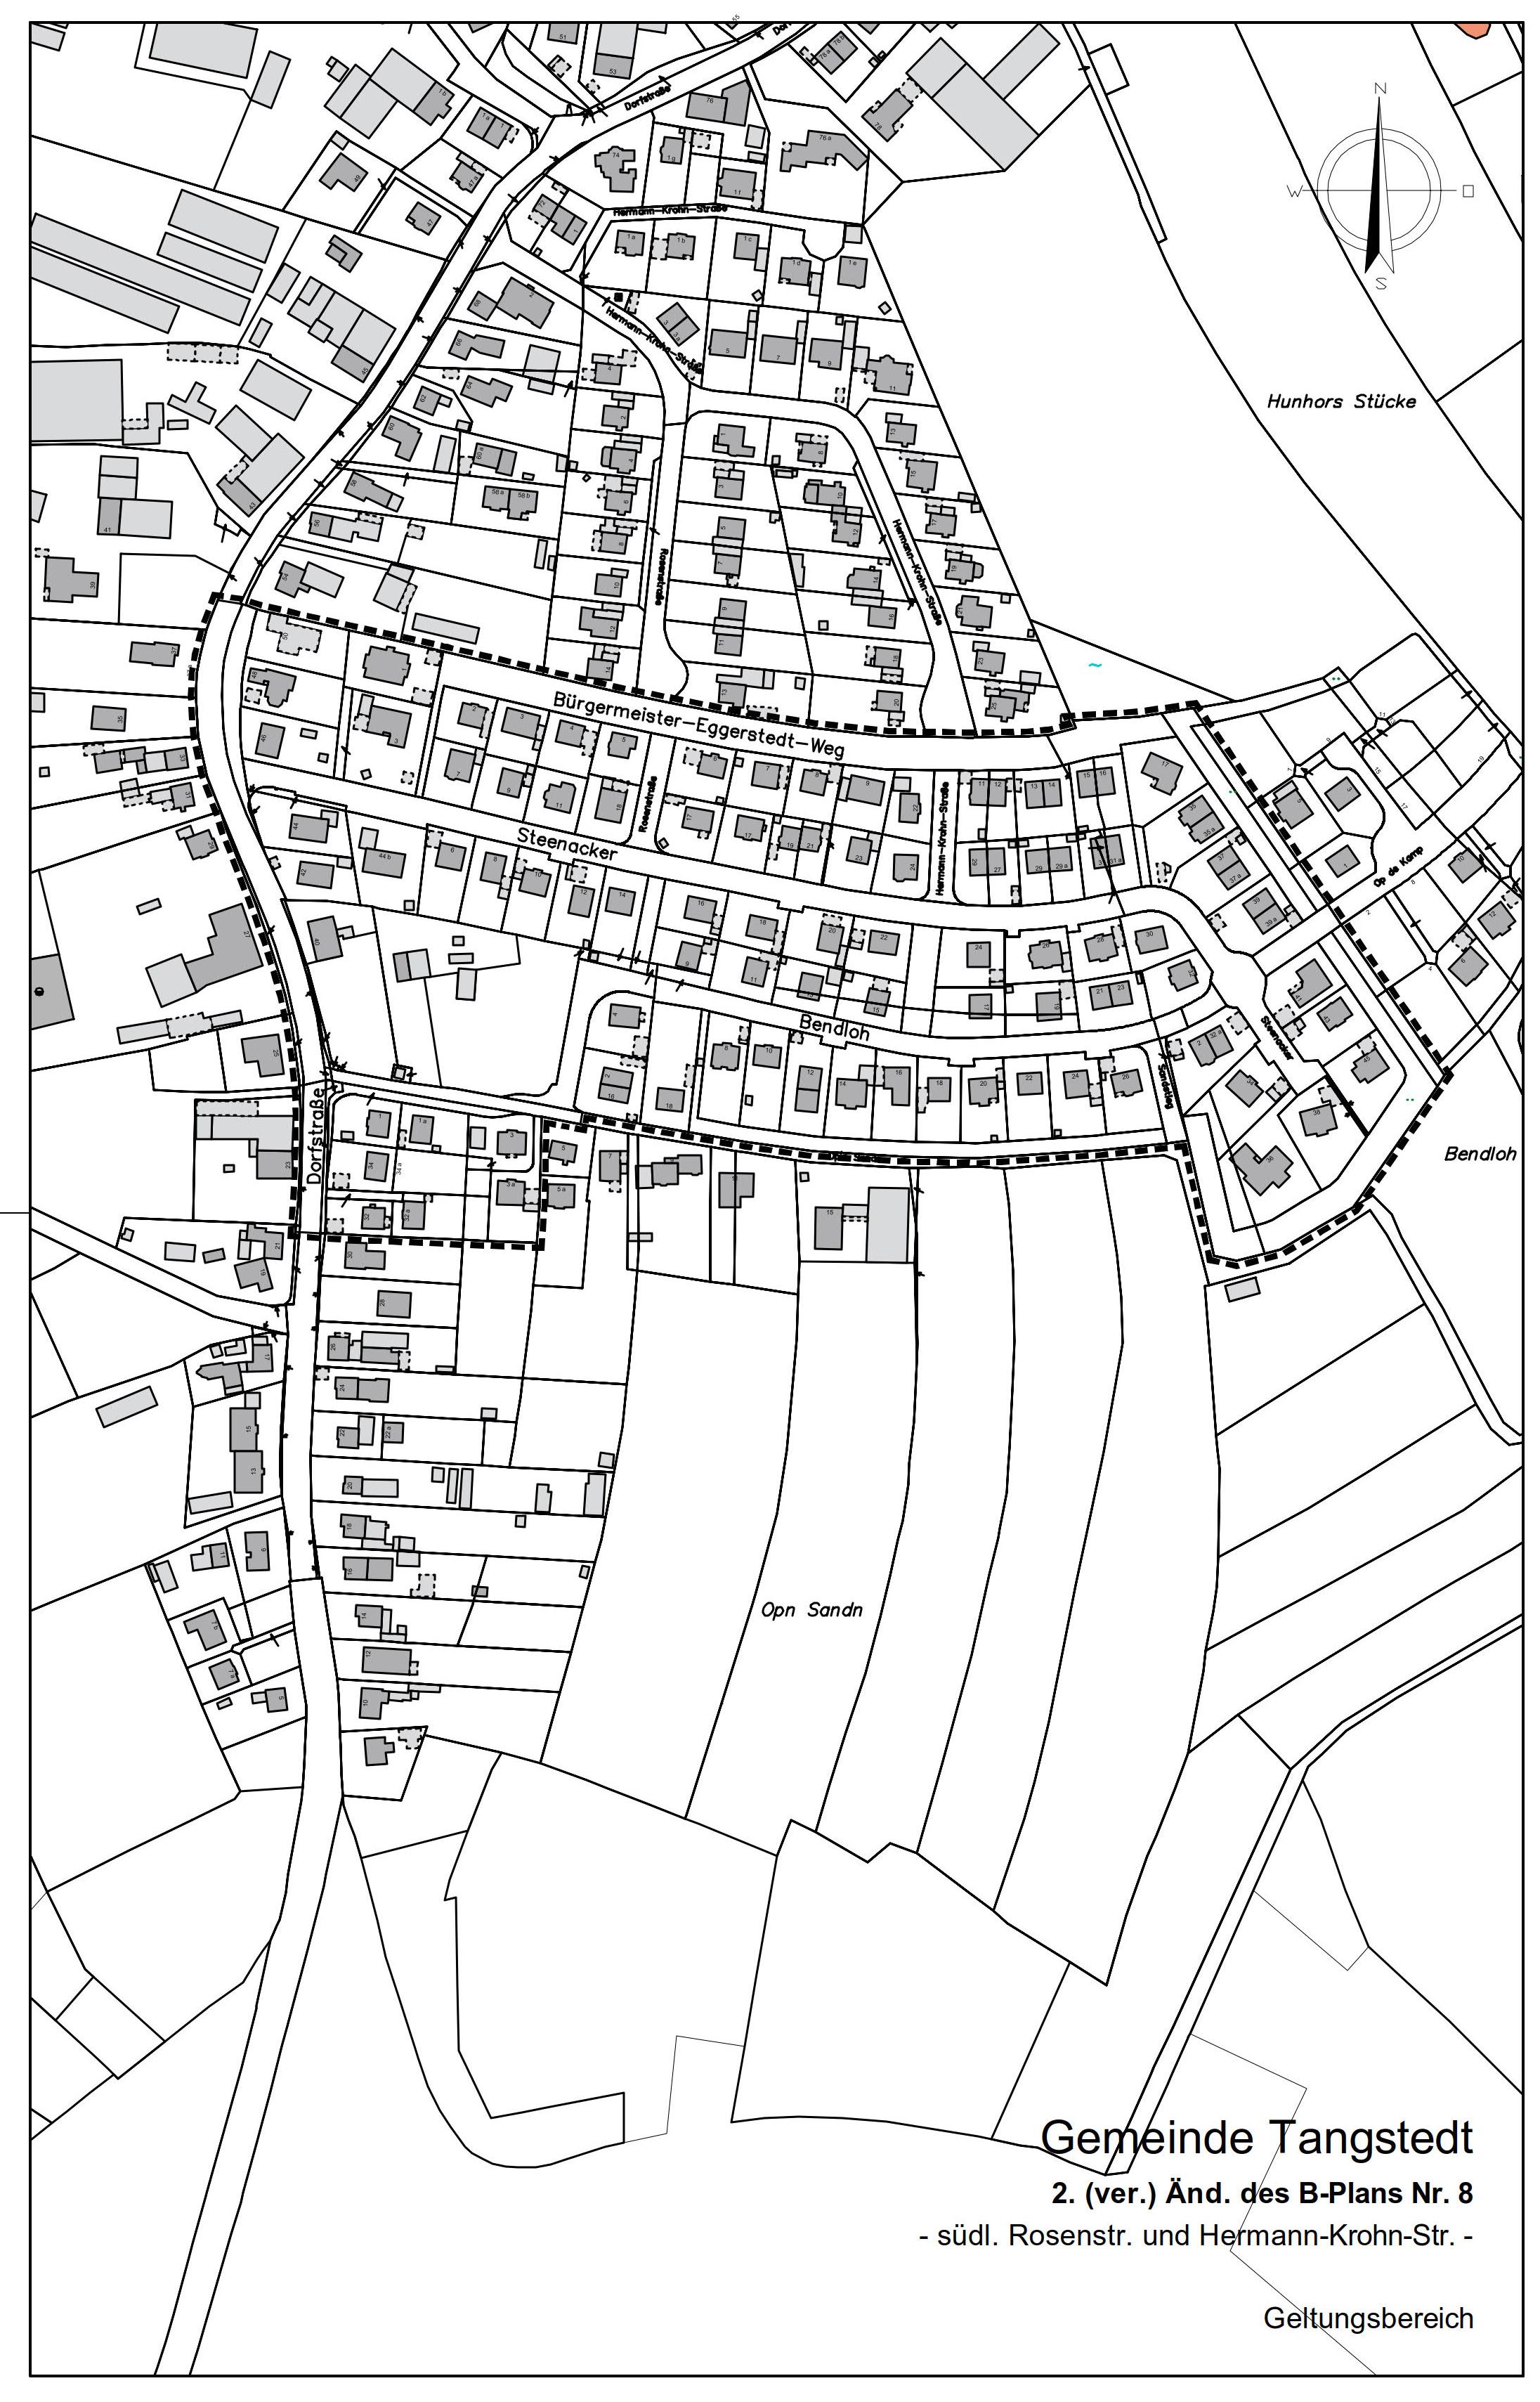 Lageplan zur 2. (vereinfachten) Änderung B-Plan 8, Tangstedt